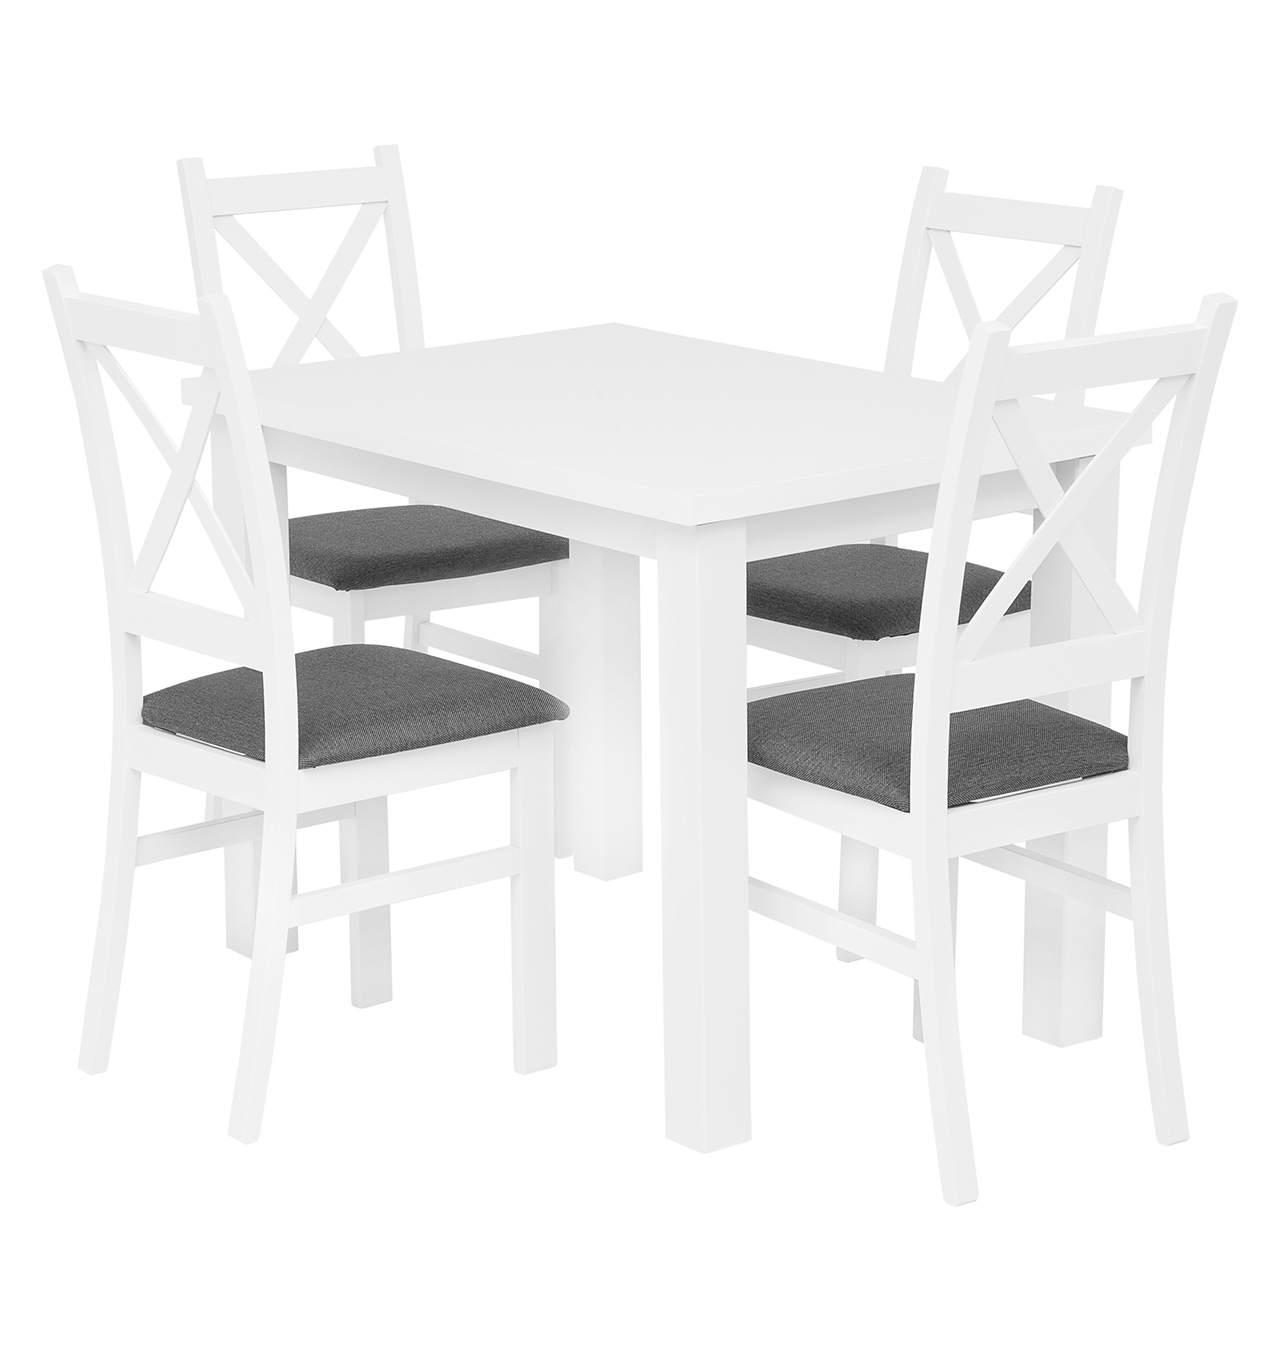 Zestaw stół Monte biały + 4 krzesła Carlo biało/szare